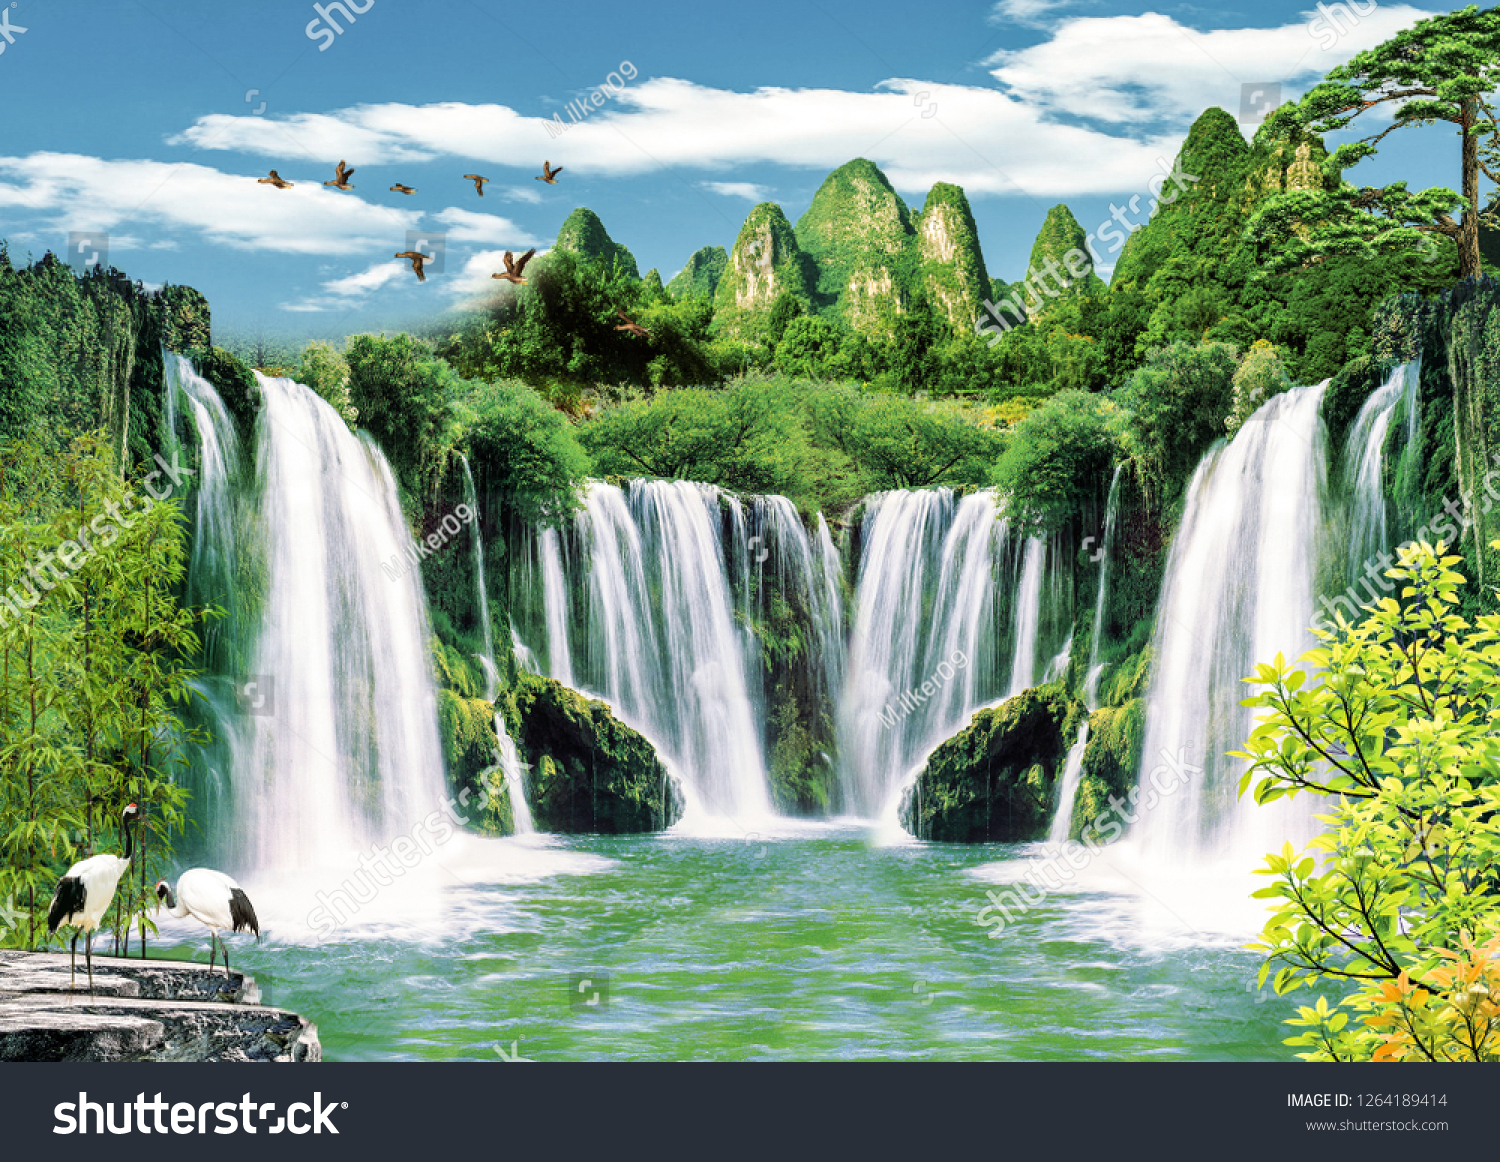 3d壁紙の背景デザインと自然の風景と滝を使用した写真用 のイラスト素材